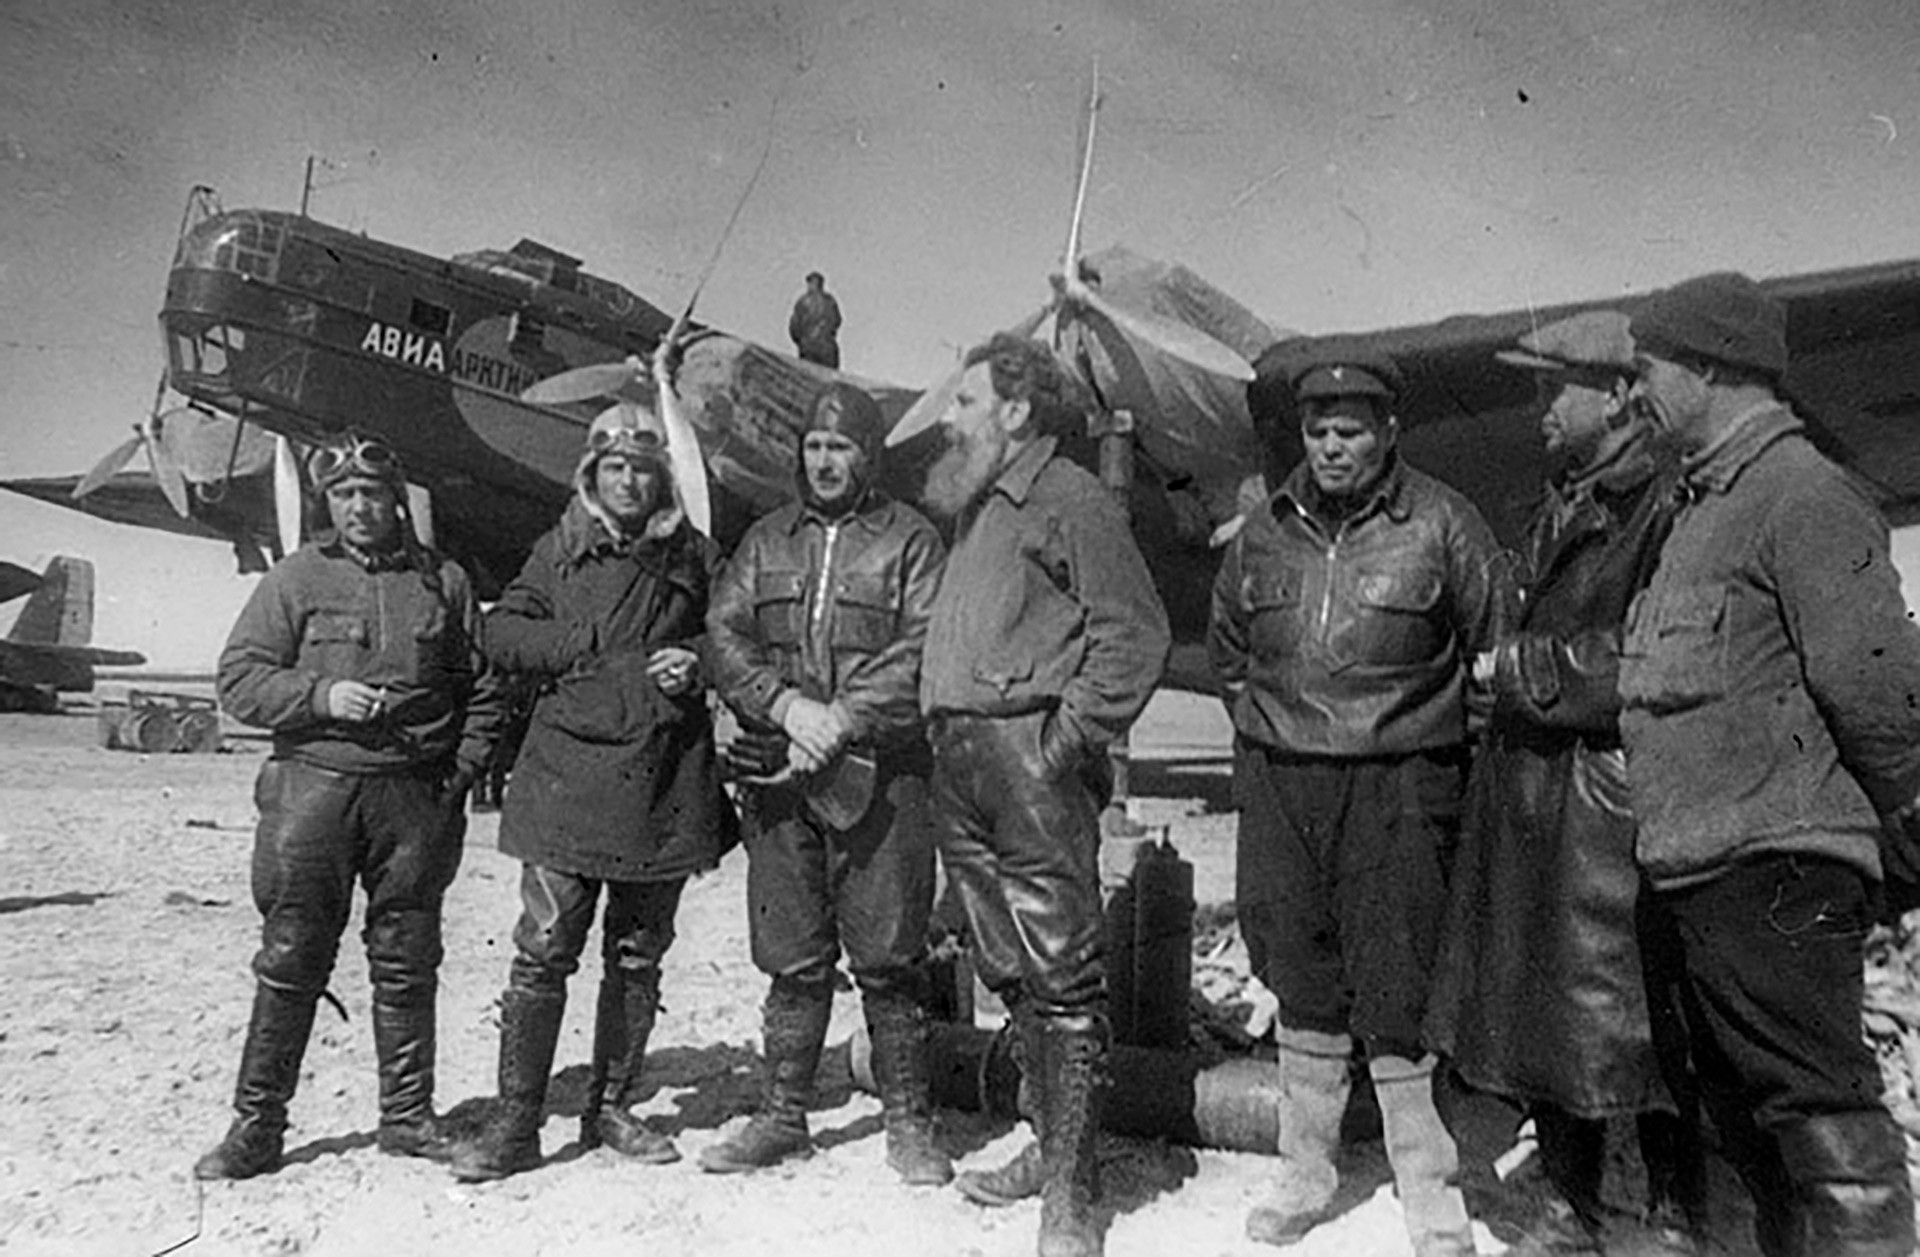 Člani odprave Severni pol 1, heroji Sovjetske zveze: I. T. Siprin, M. I. Ševeljov, M. S. Babuškin, M. V. Vodopjanov, A. D. Aleksejev, V. S. Molokov